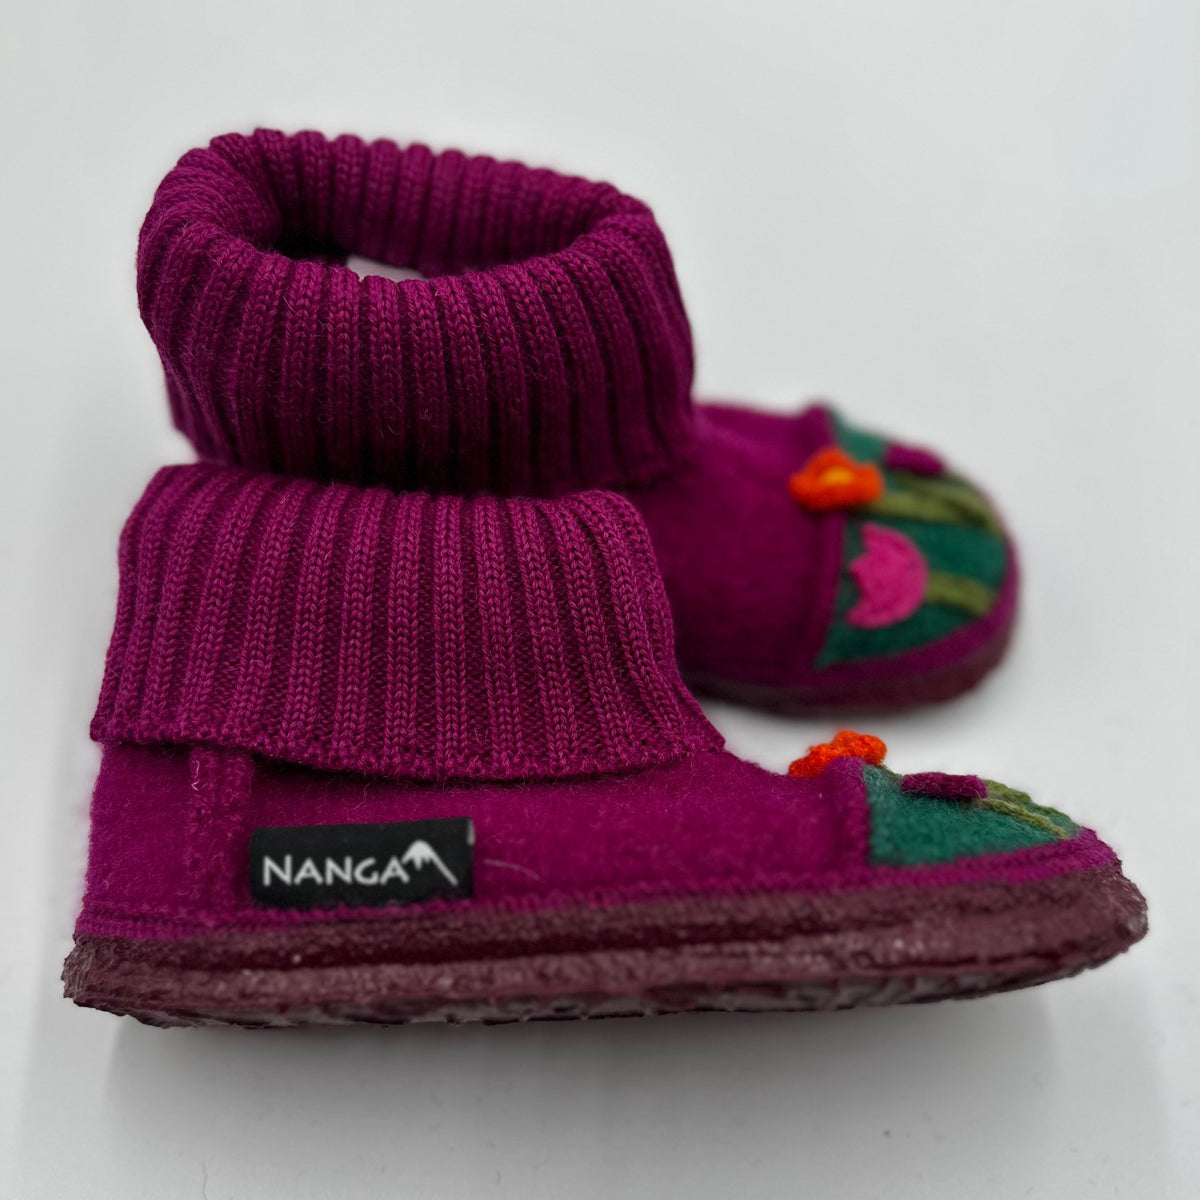 NANGA Boiled Wool Slippers for Children - Margarete